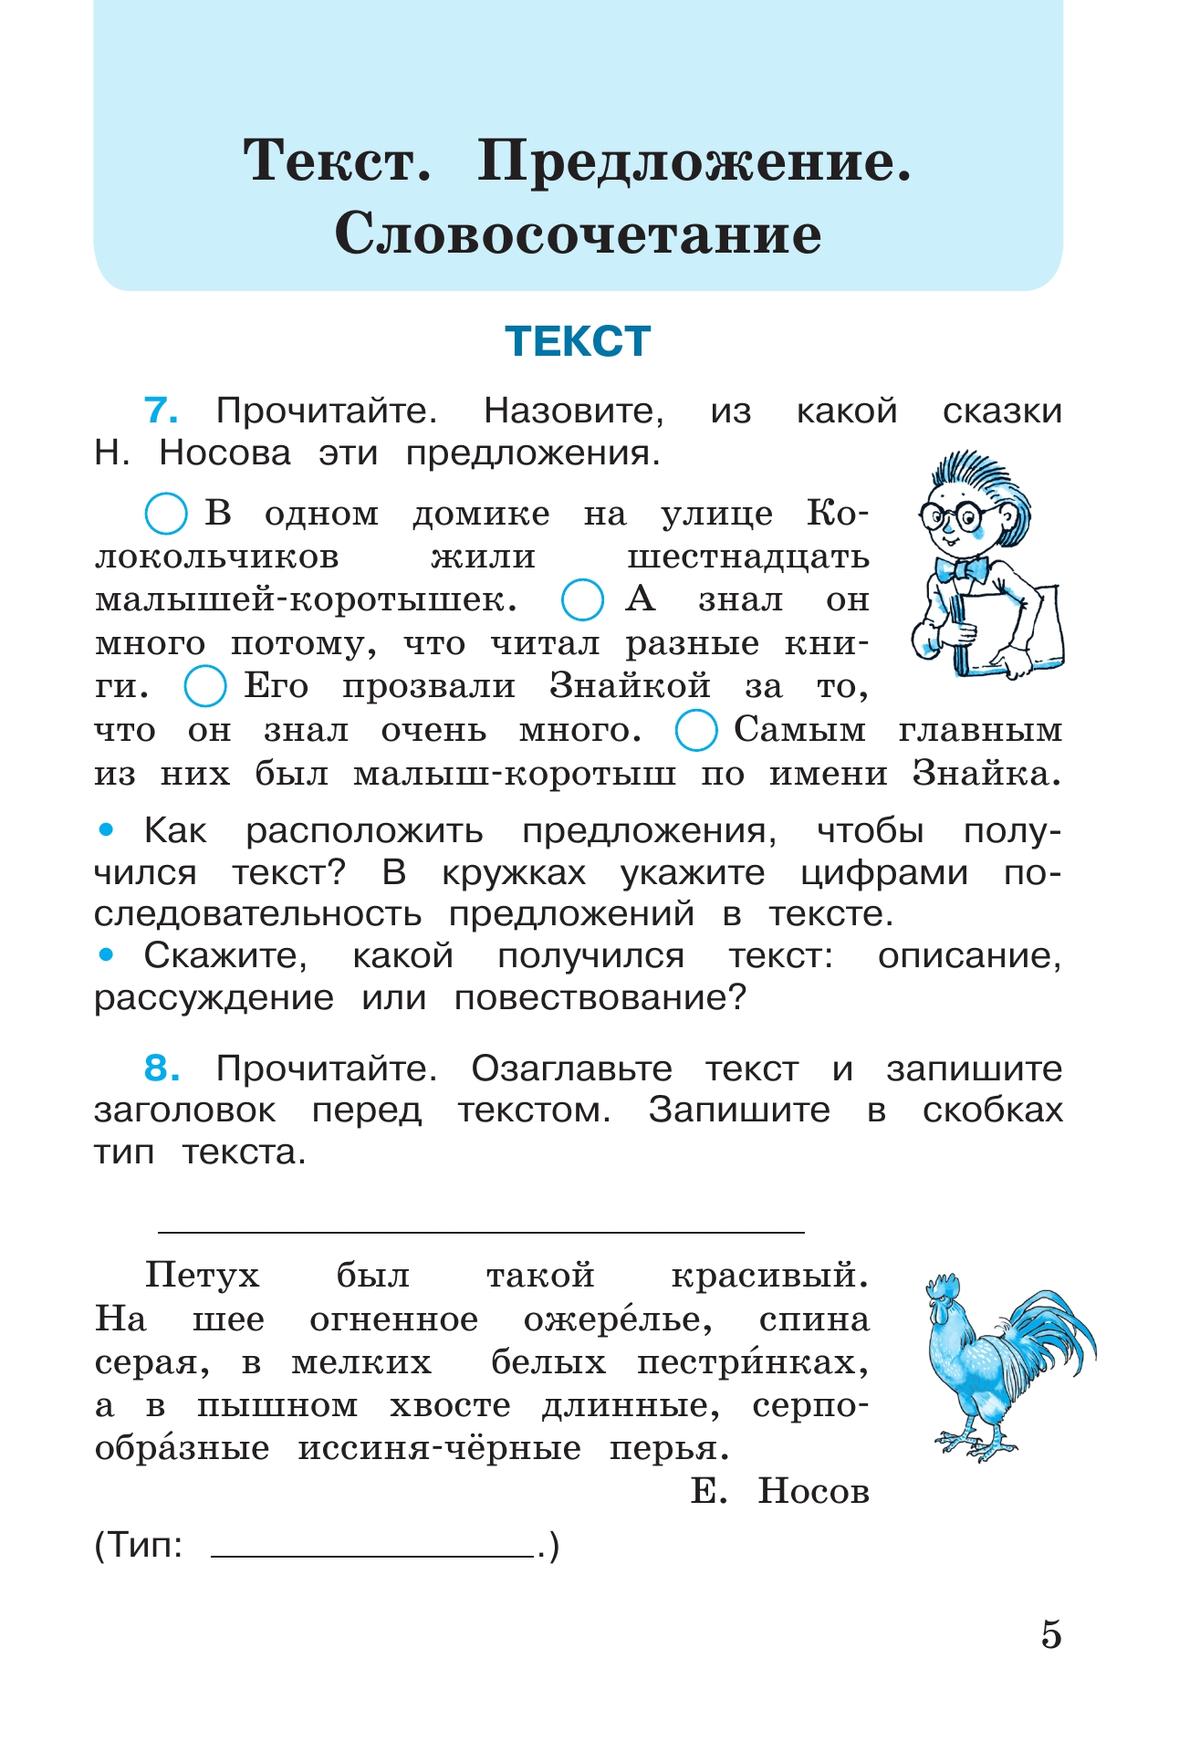 Русский язык. Рабочая тетрадь. 3 класс. В 2 частях. Часть 1 11